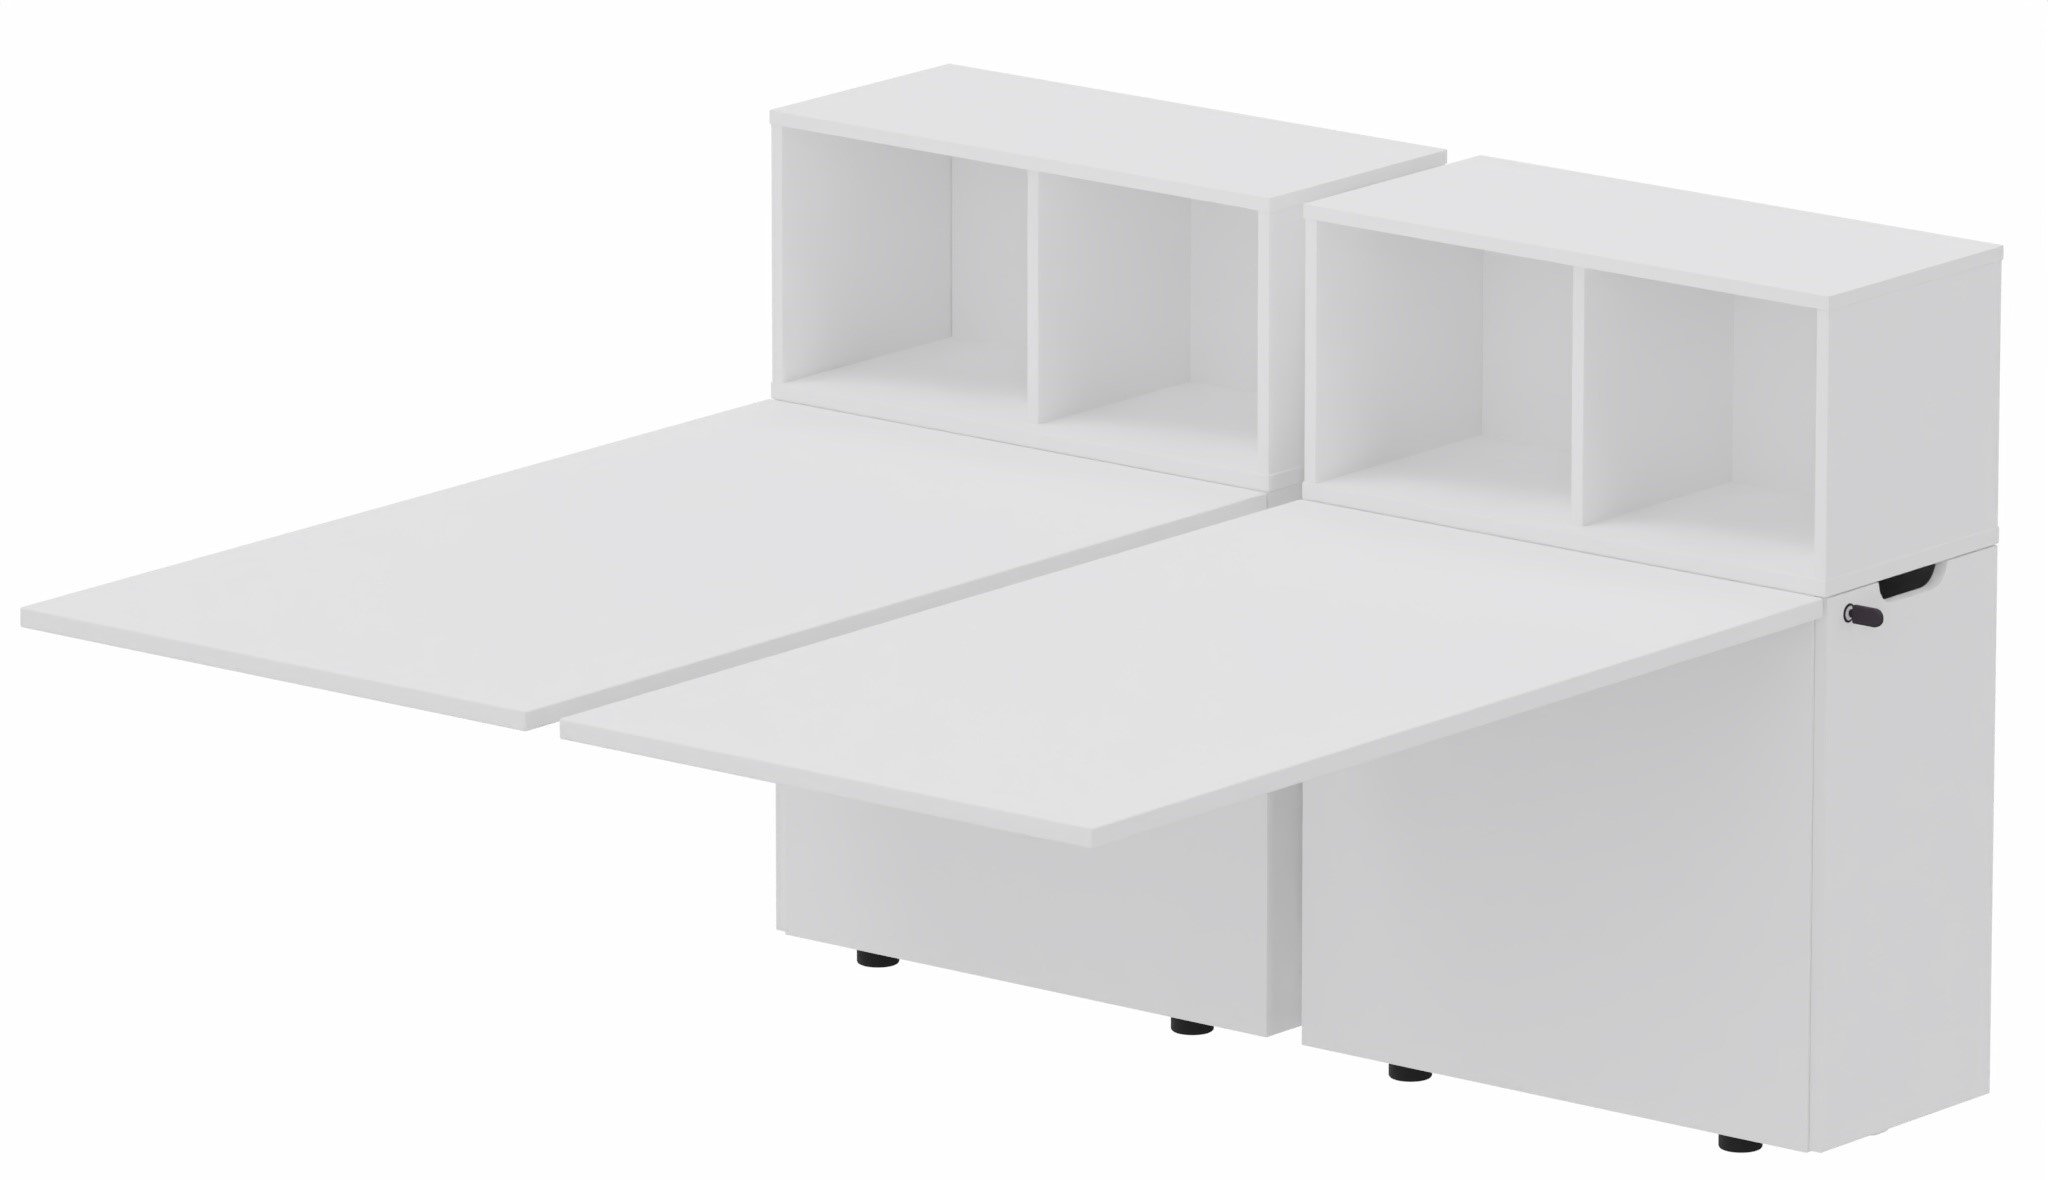 K8 Bench suivant avec niche sur rangement personnel 216x80cm encombrement 216x165cm, plateau blanc, structure blanc